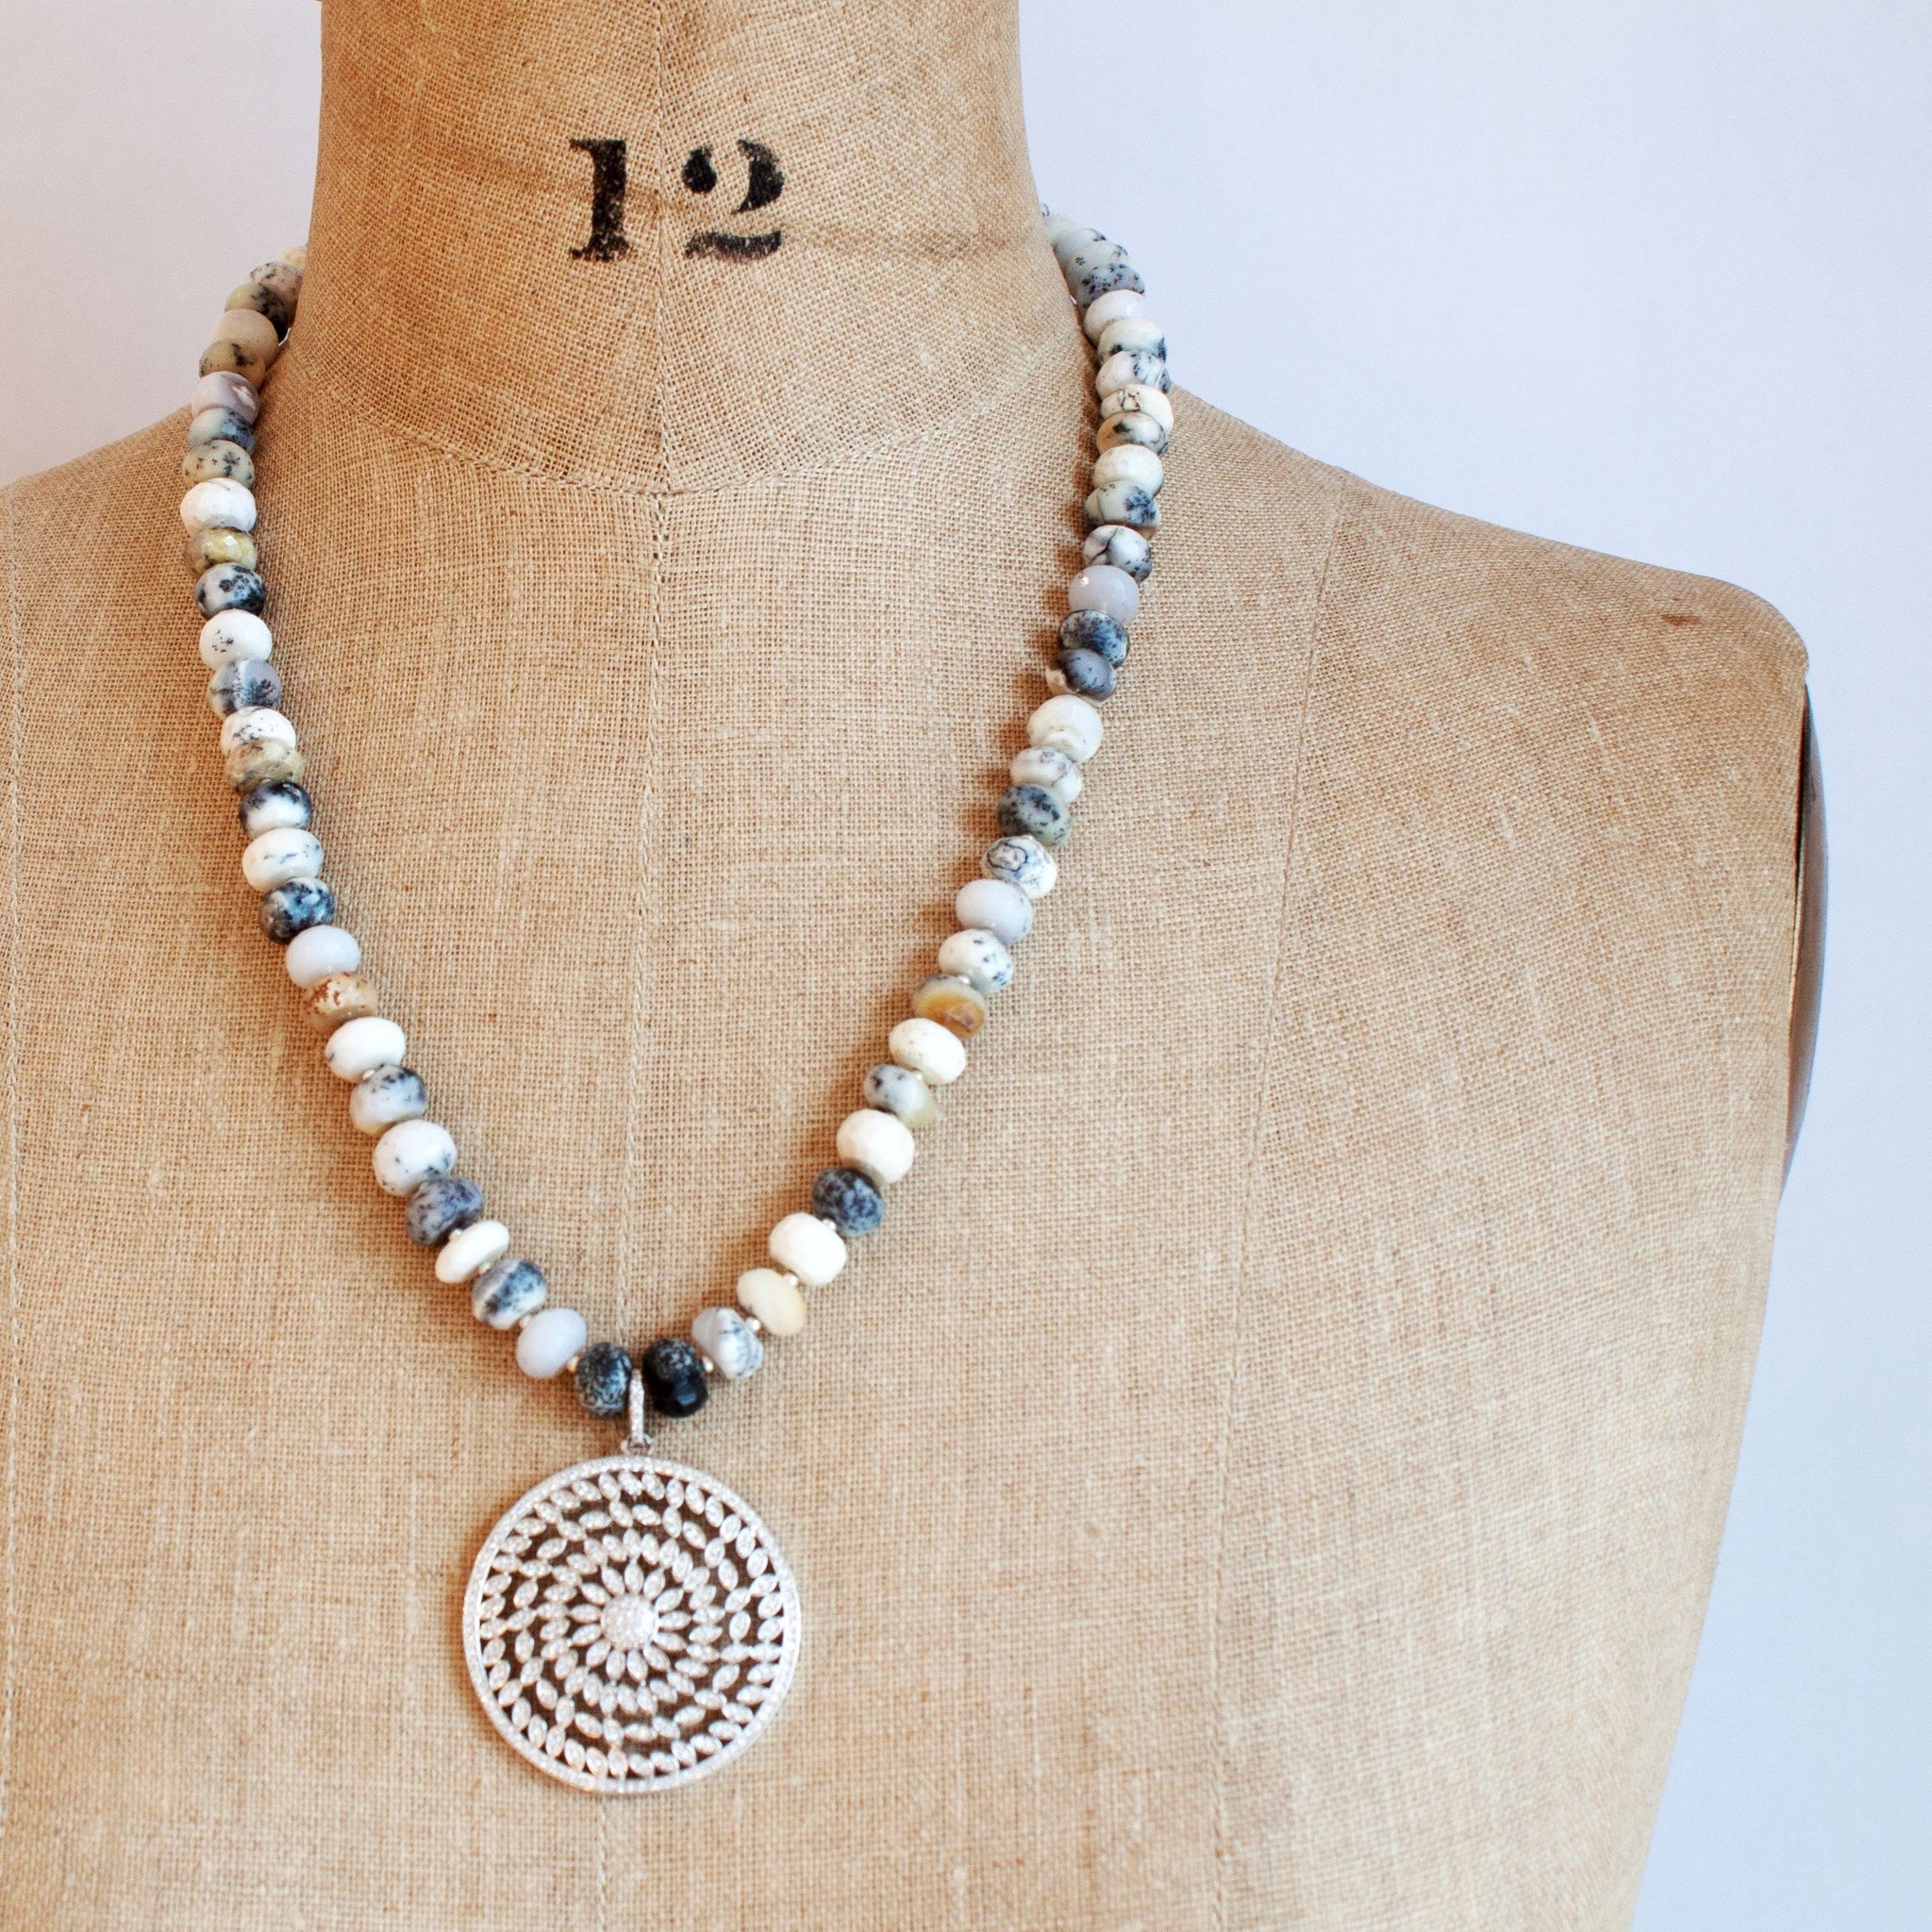 dendrite opal pendant necklace